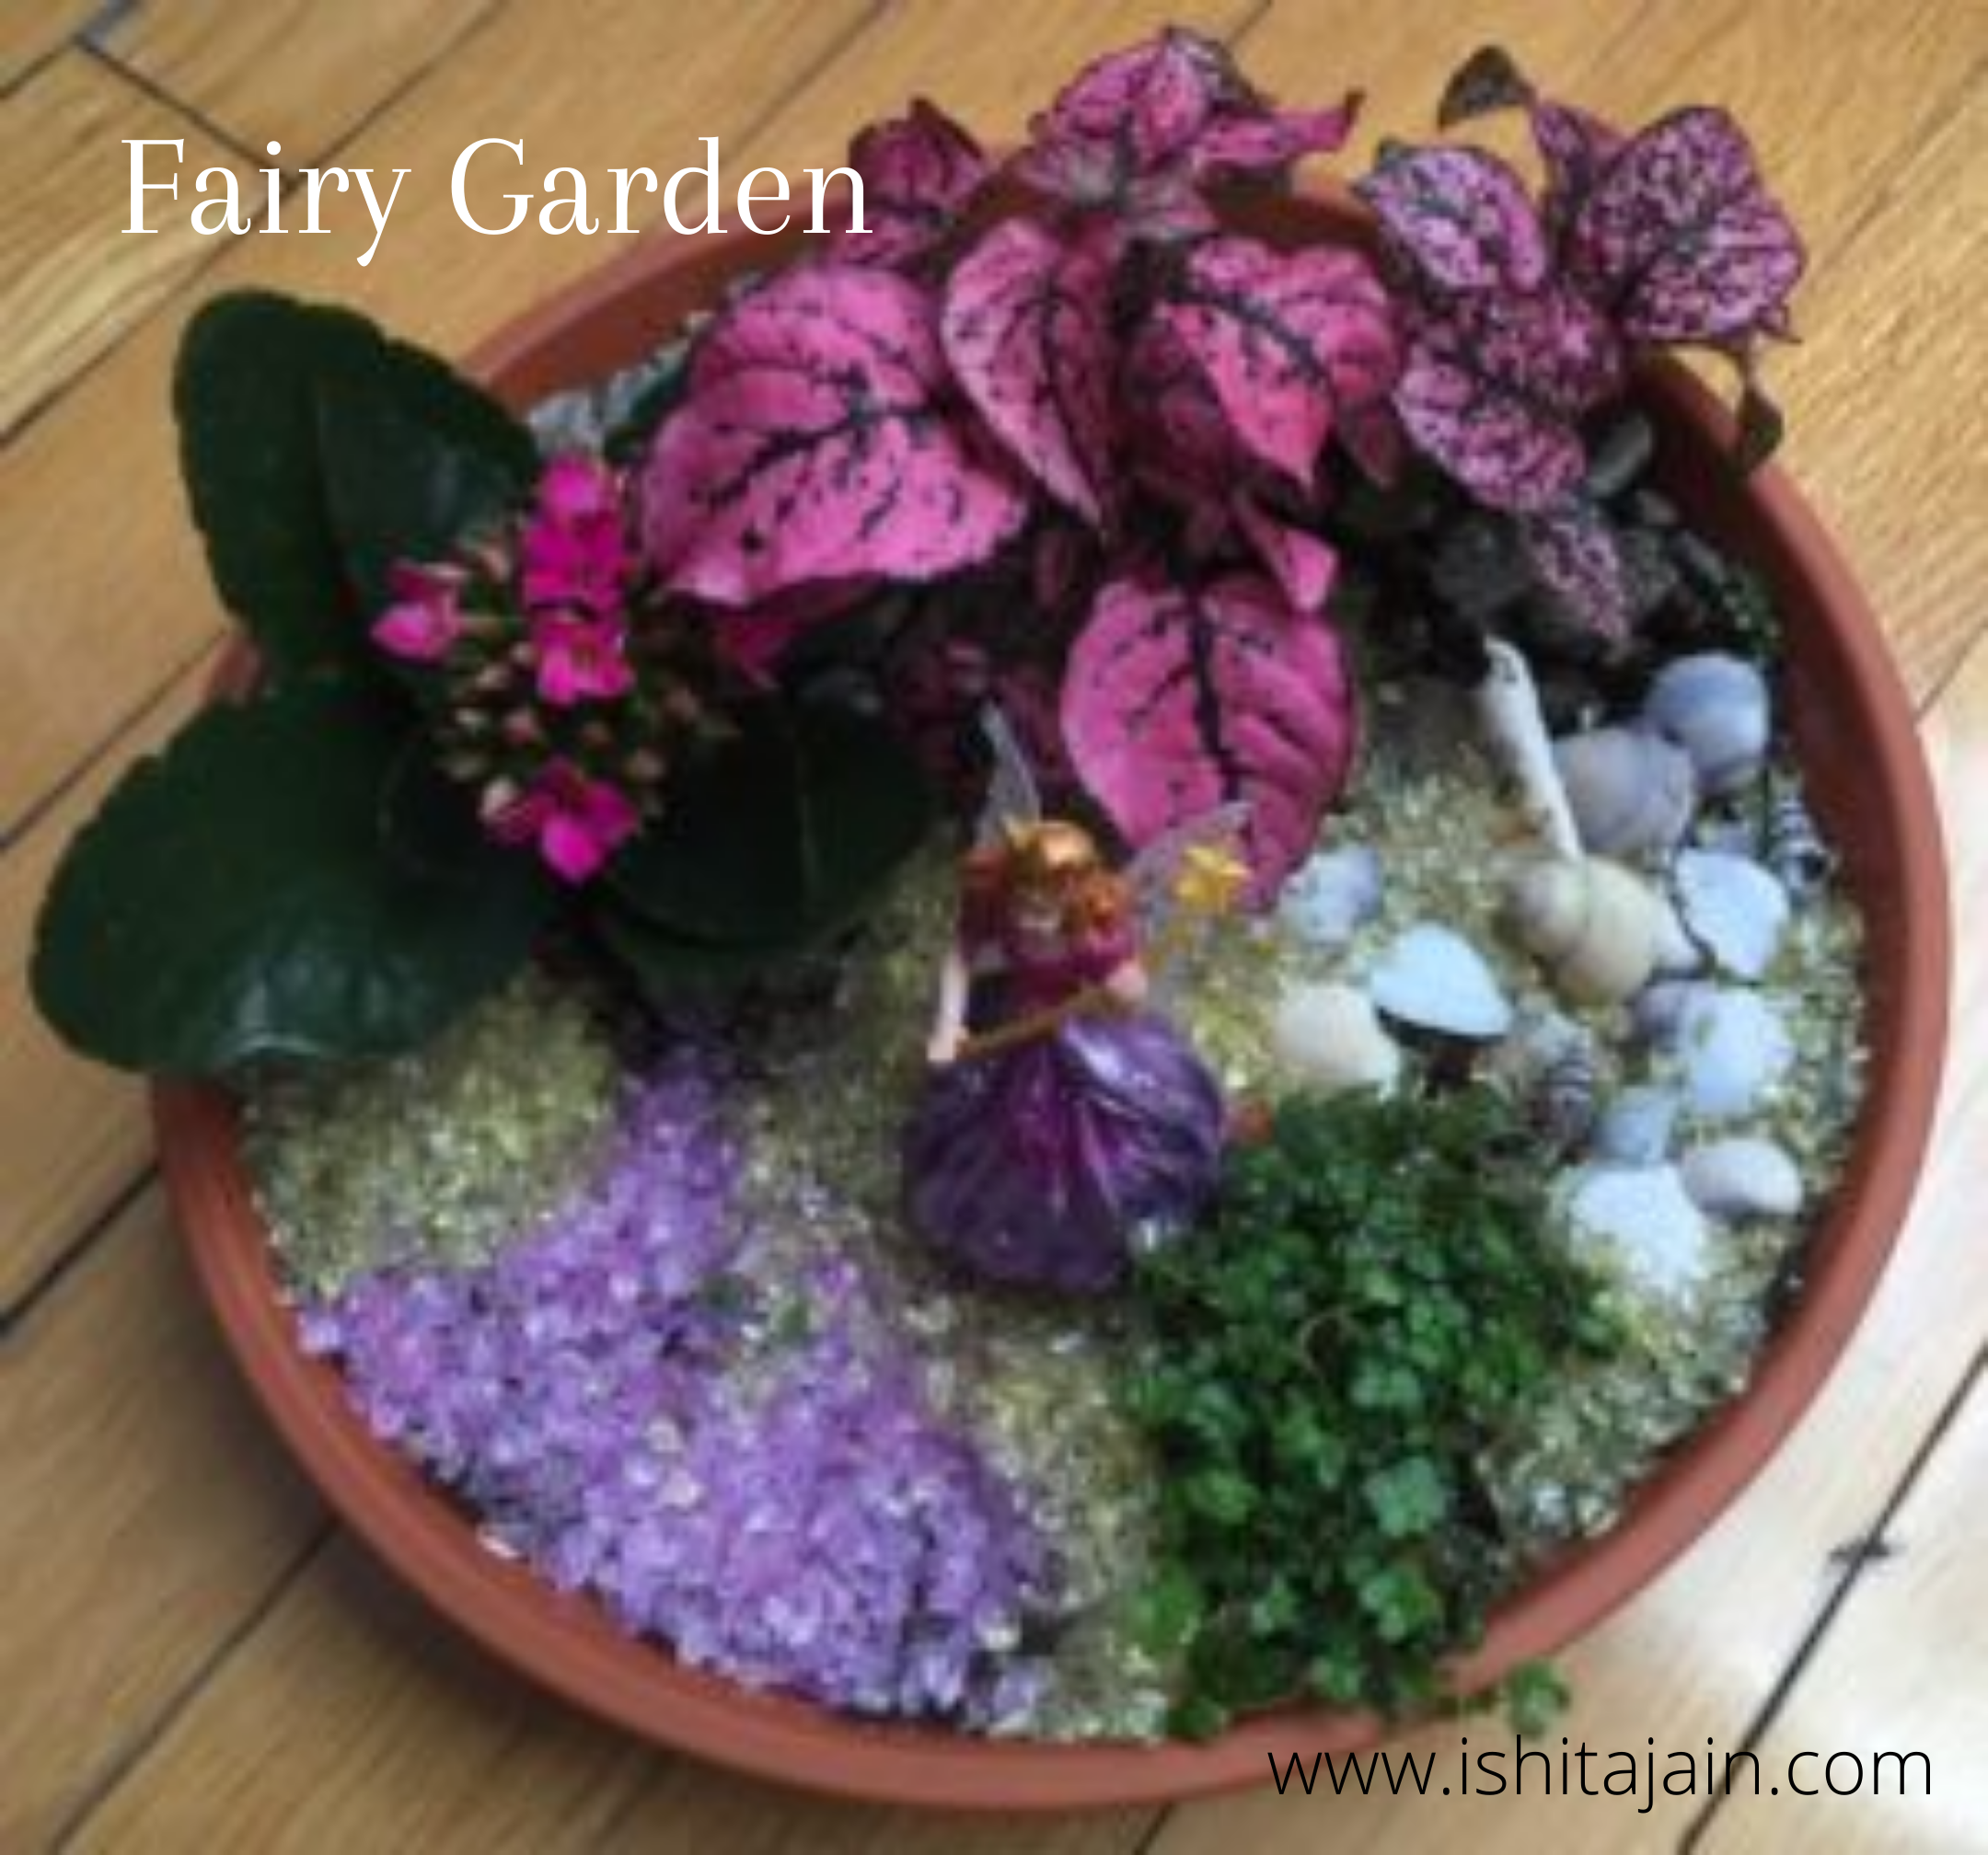 Post #7: My Fairy Garden